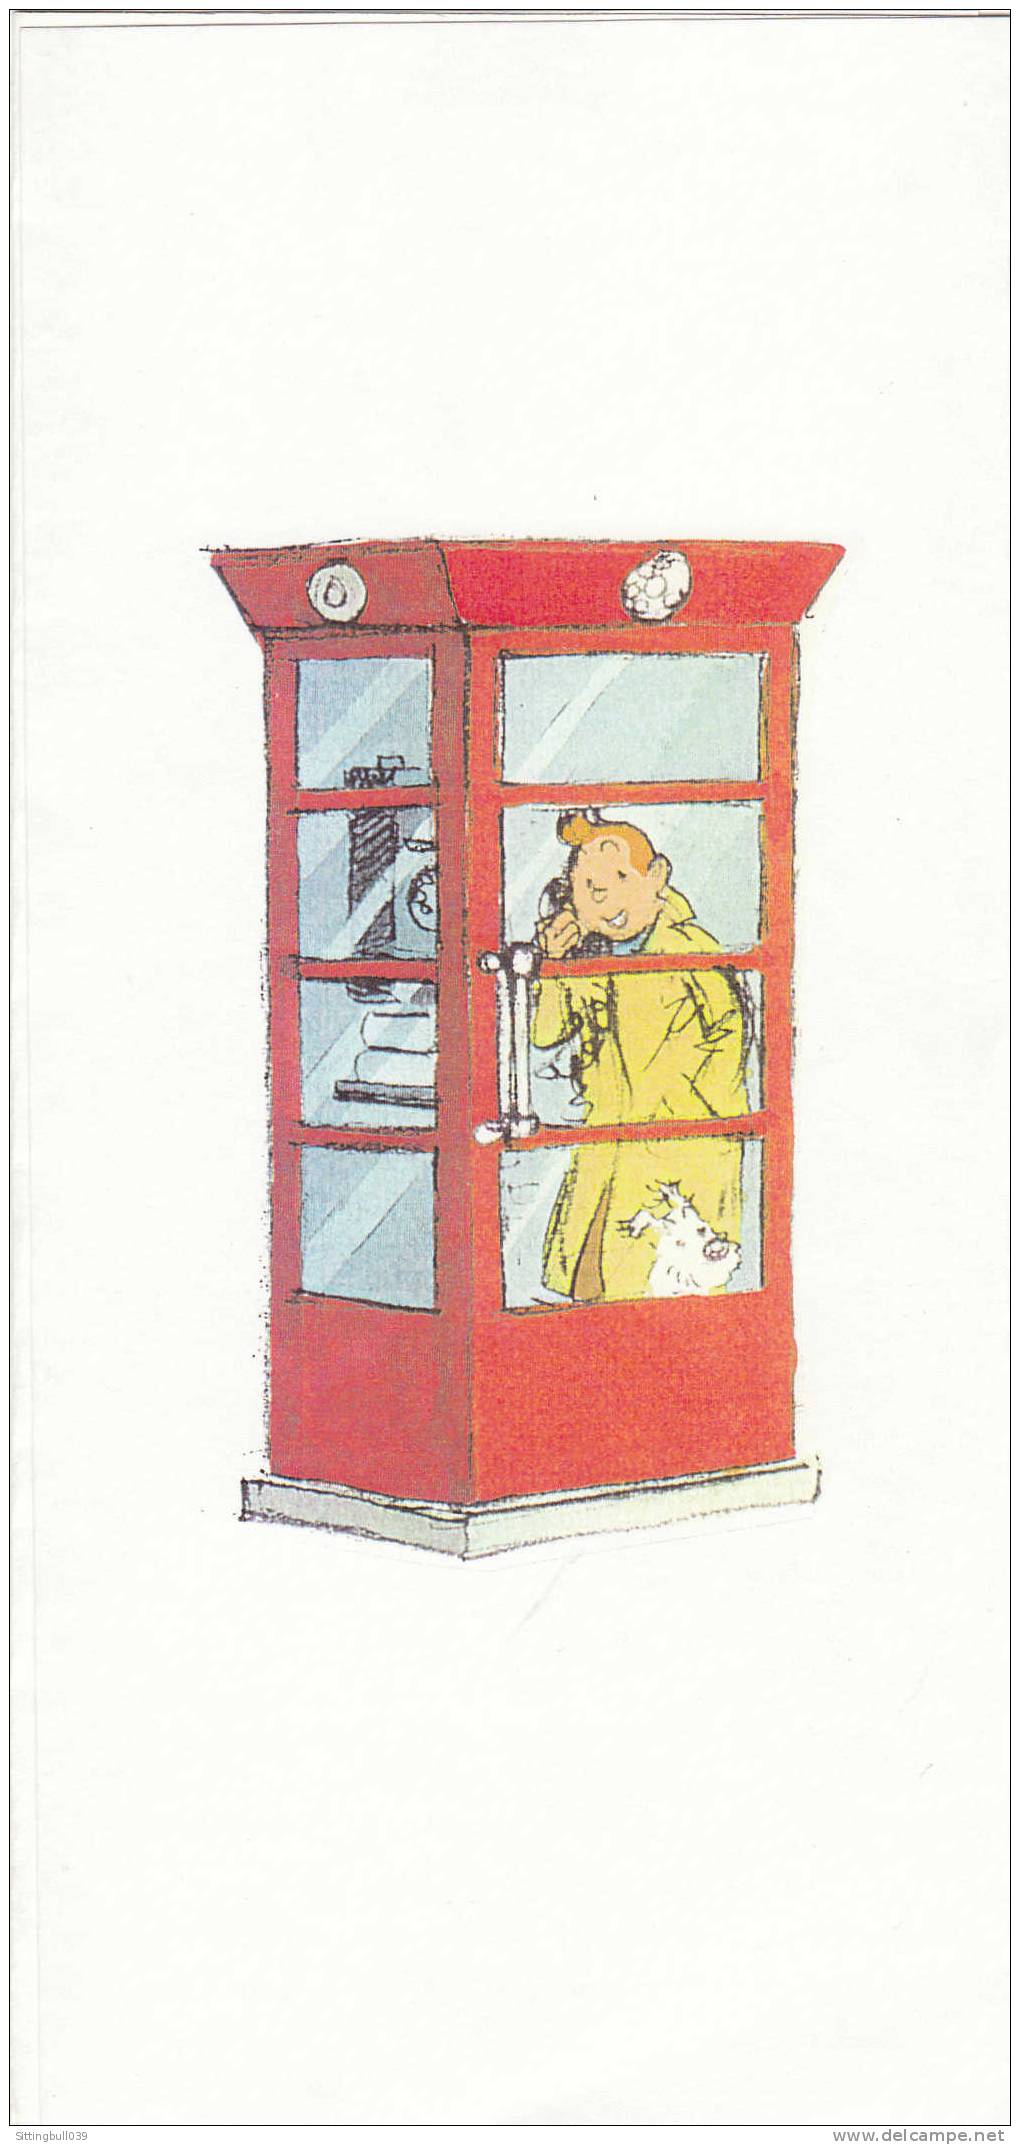 TINTIN DANS UNE ETRANGE CABINE TELEPHONIQUE. SD. Années 90 - Affiches & Posters